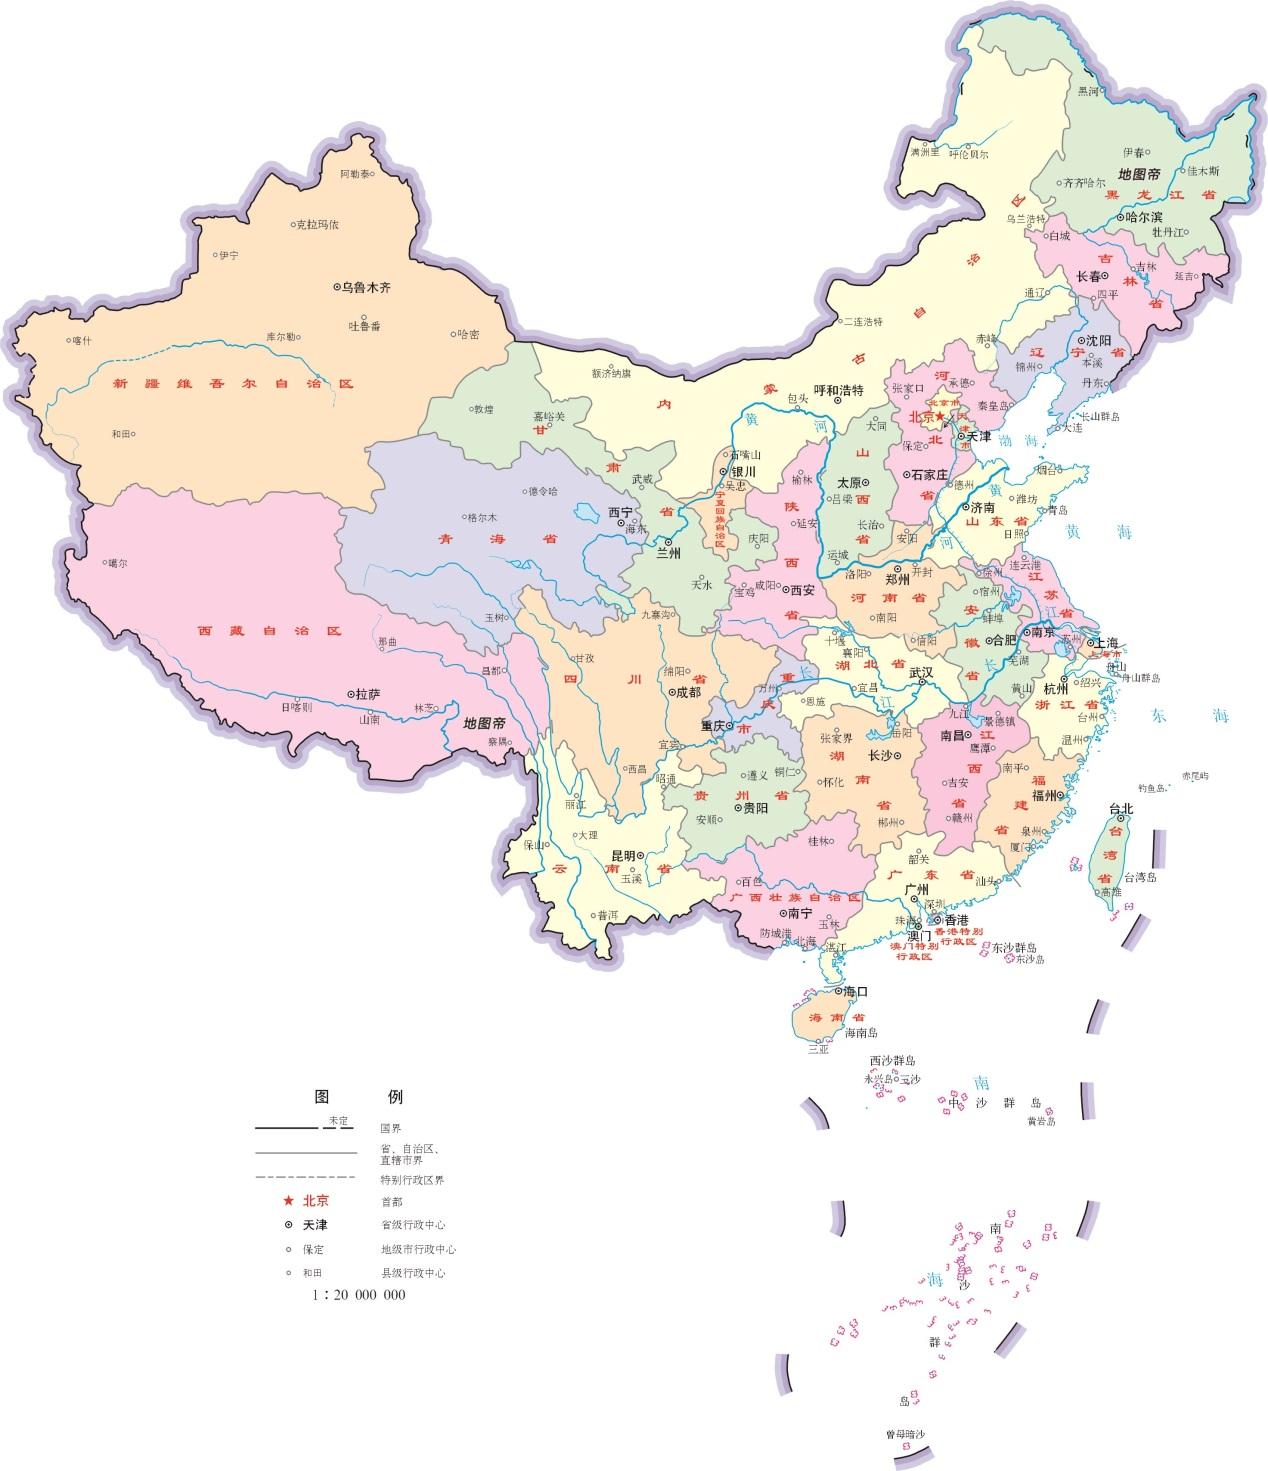 江西省位于长江南岸,和湖南,湖北,安徽,浙江,福建,广东几个省相邻.